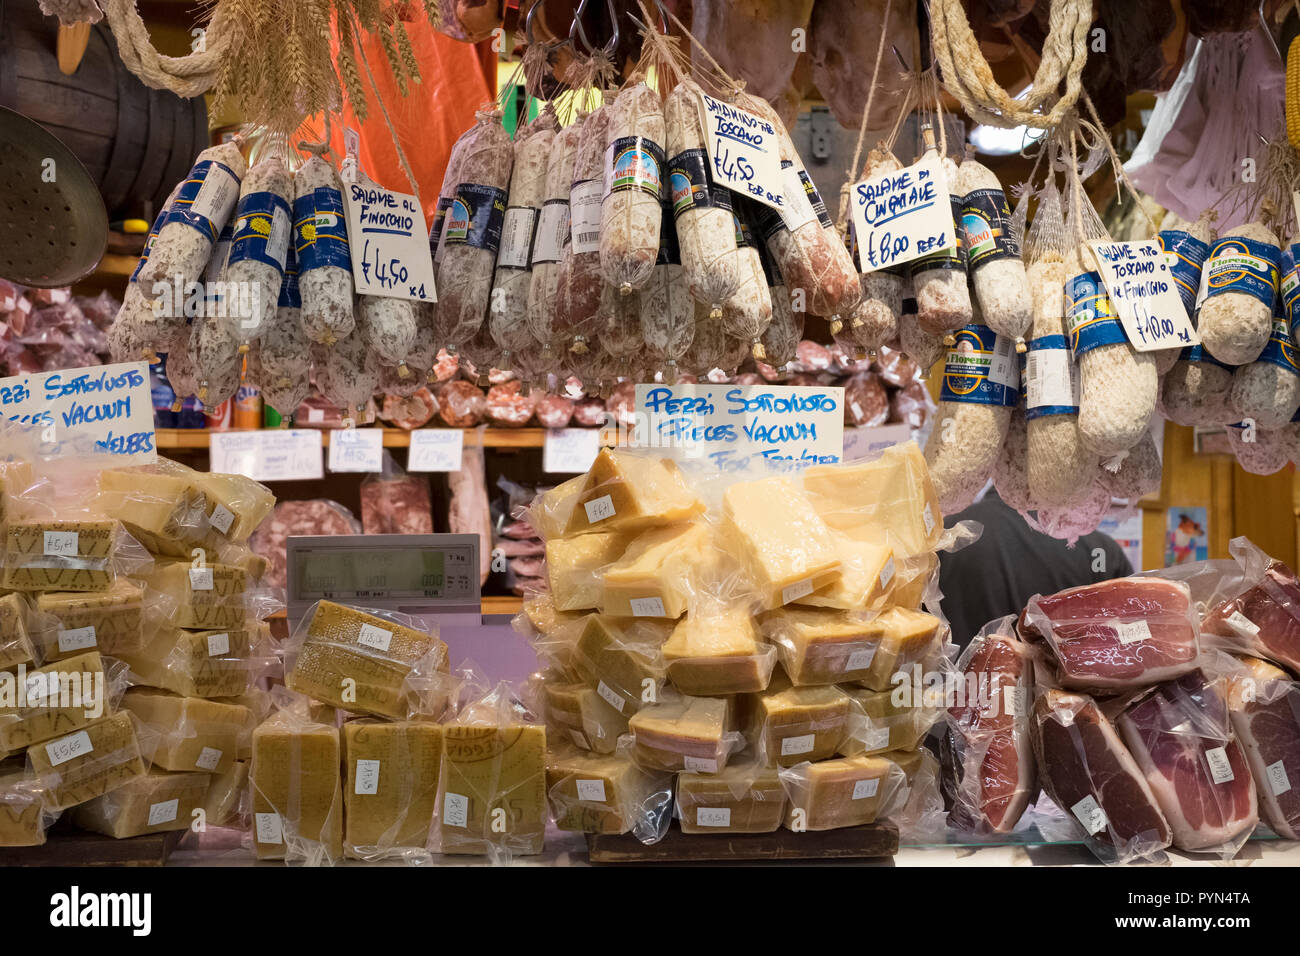 Visualizzazione di salame (salame) indurito di salsicce e formaggio parmigiano reggiano classico su un mercato in stallo a Firenze, Italia. Foto Stock